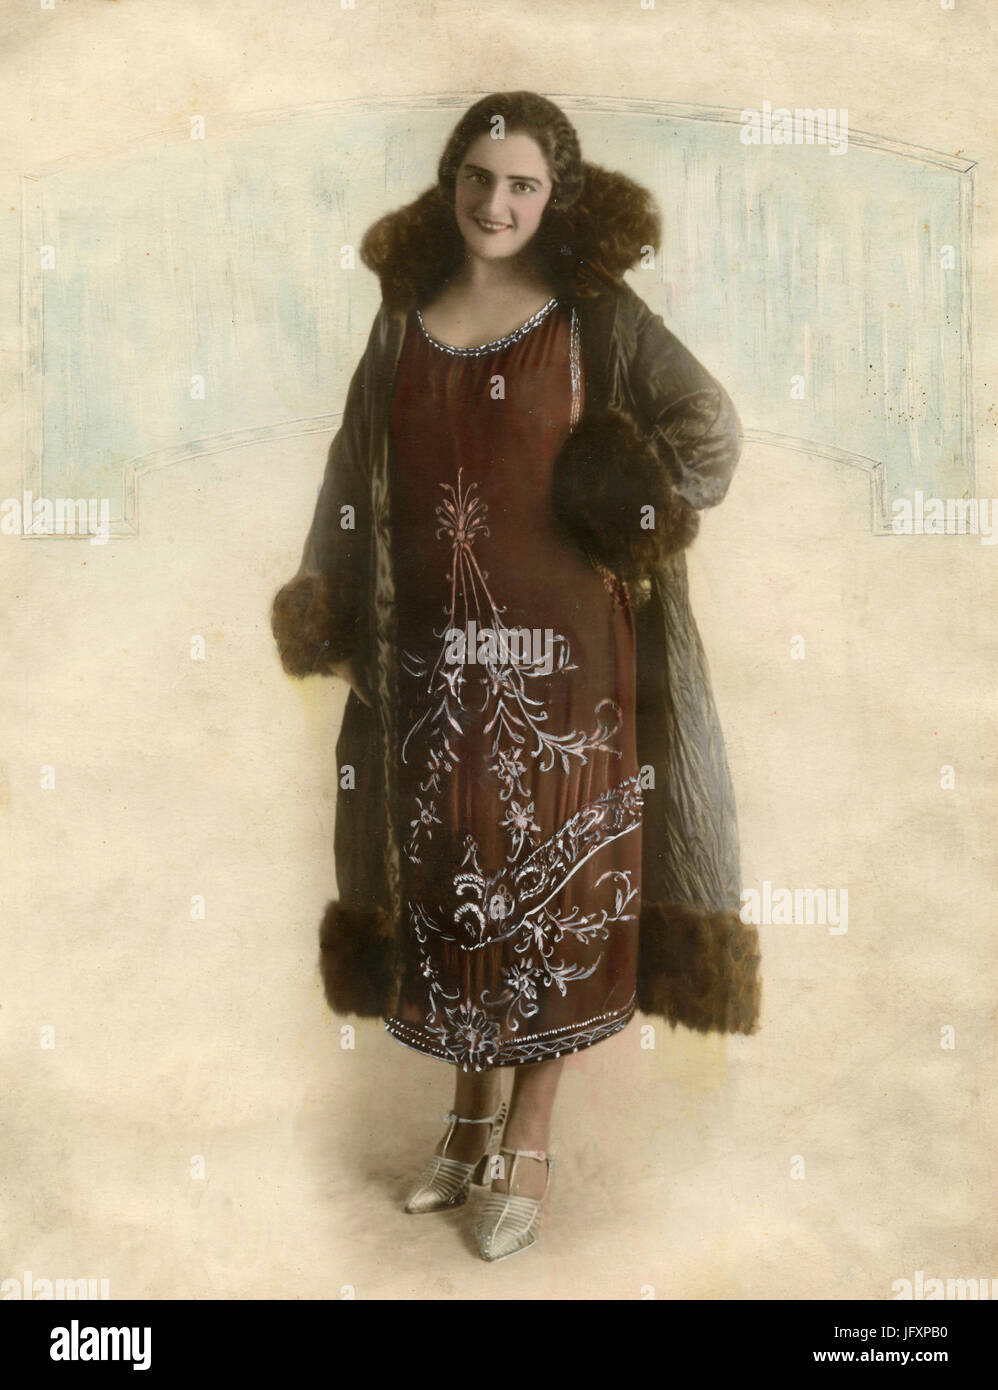 Pleine longueur couleur portrait de femme avec robe brodée, Italie Banque D'Images